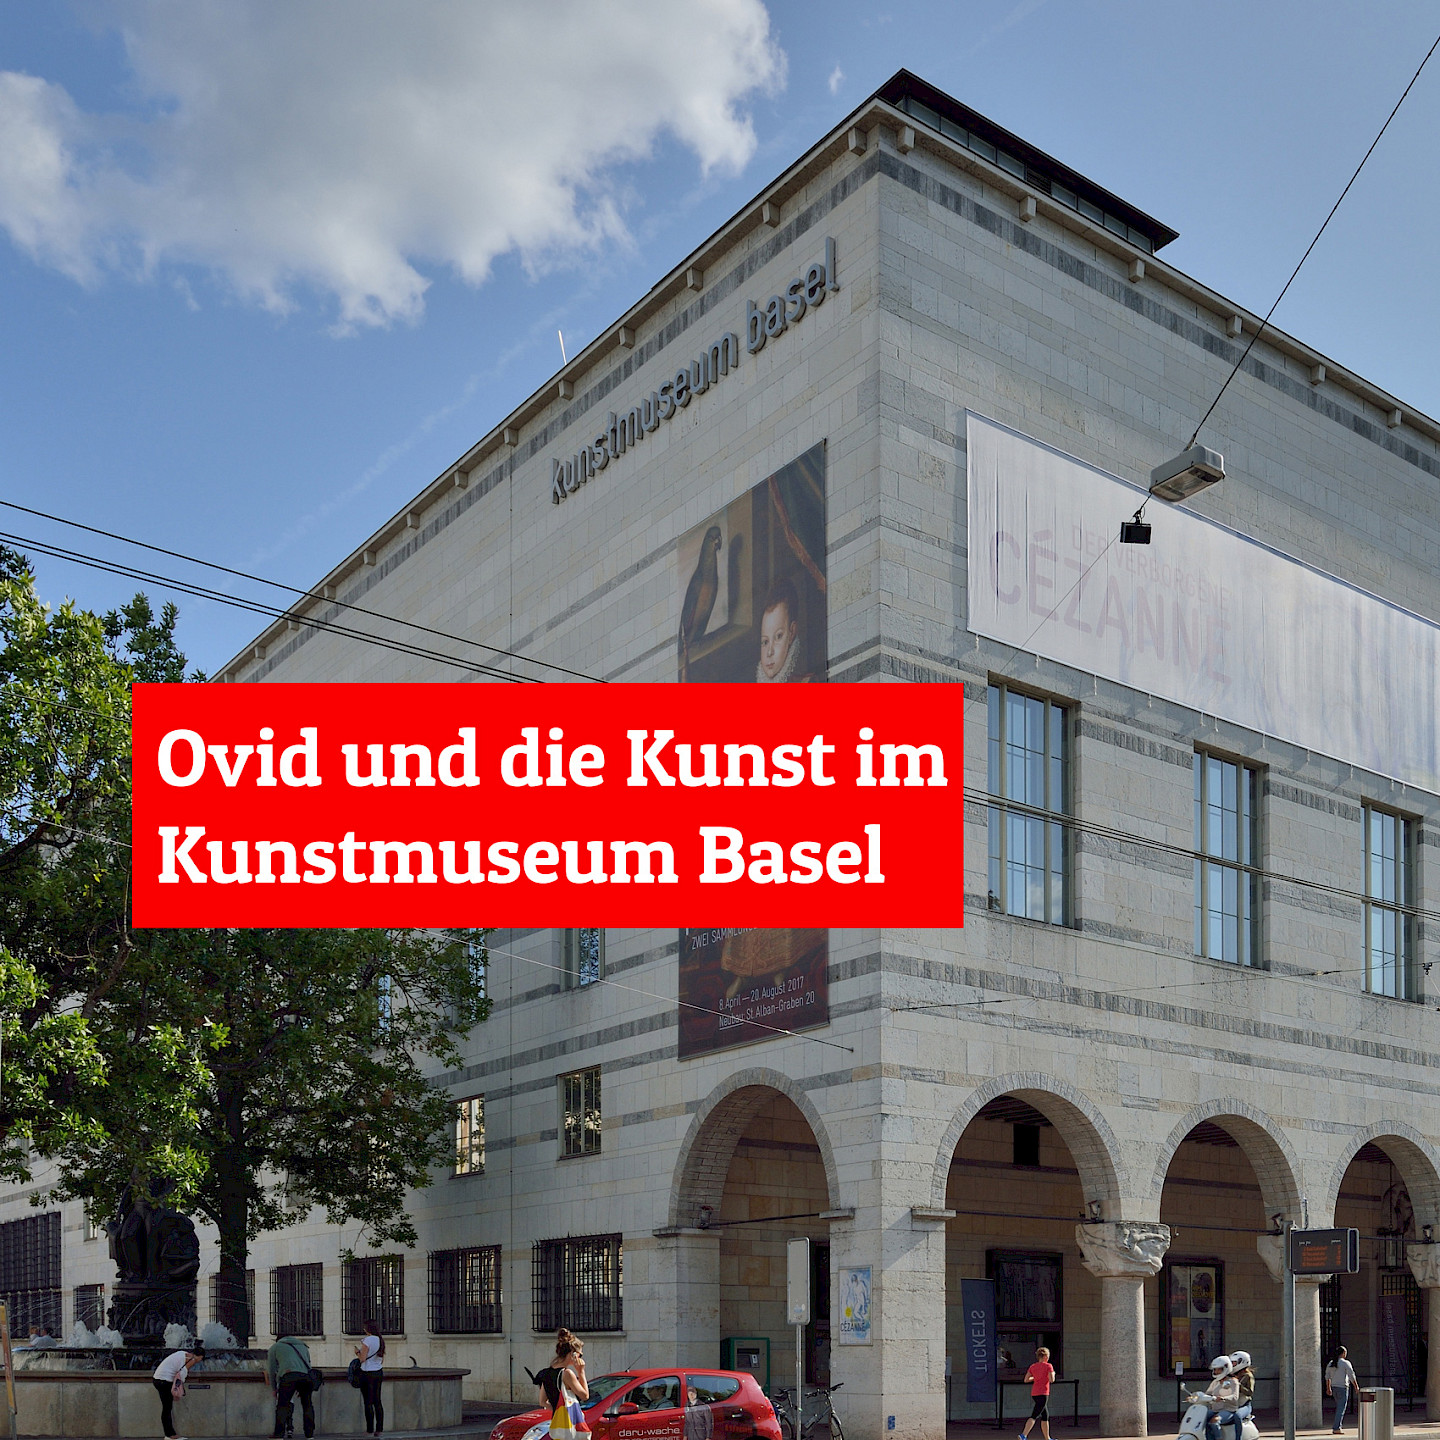 Ovid und die Kunst (Basel)